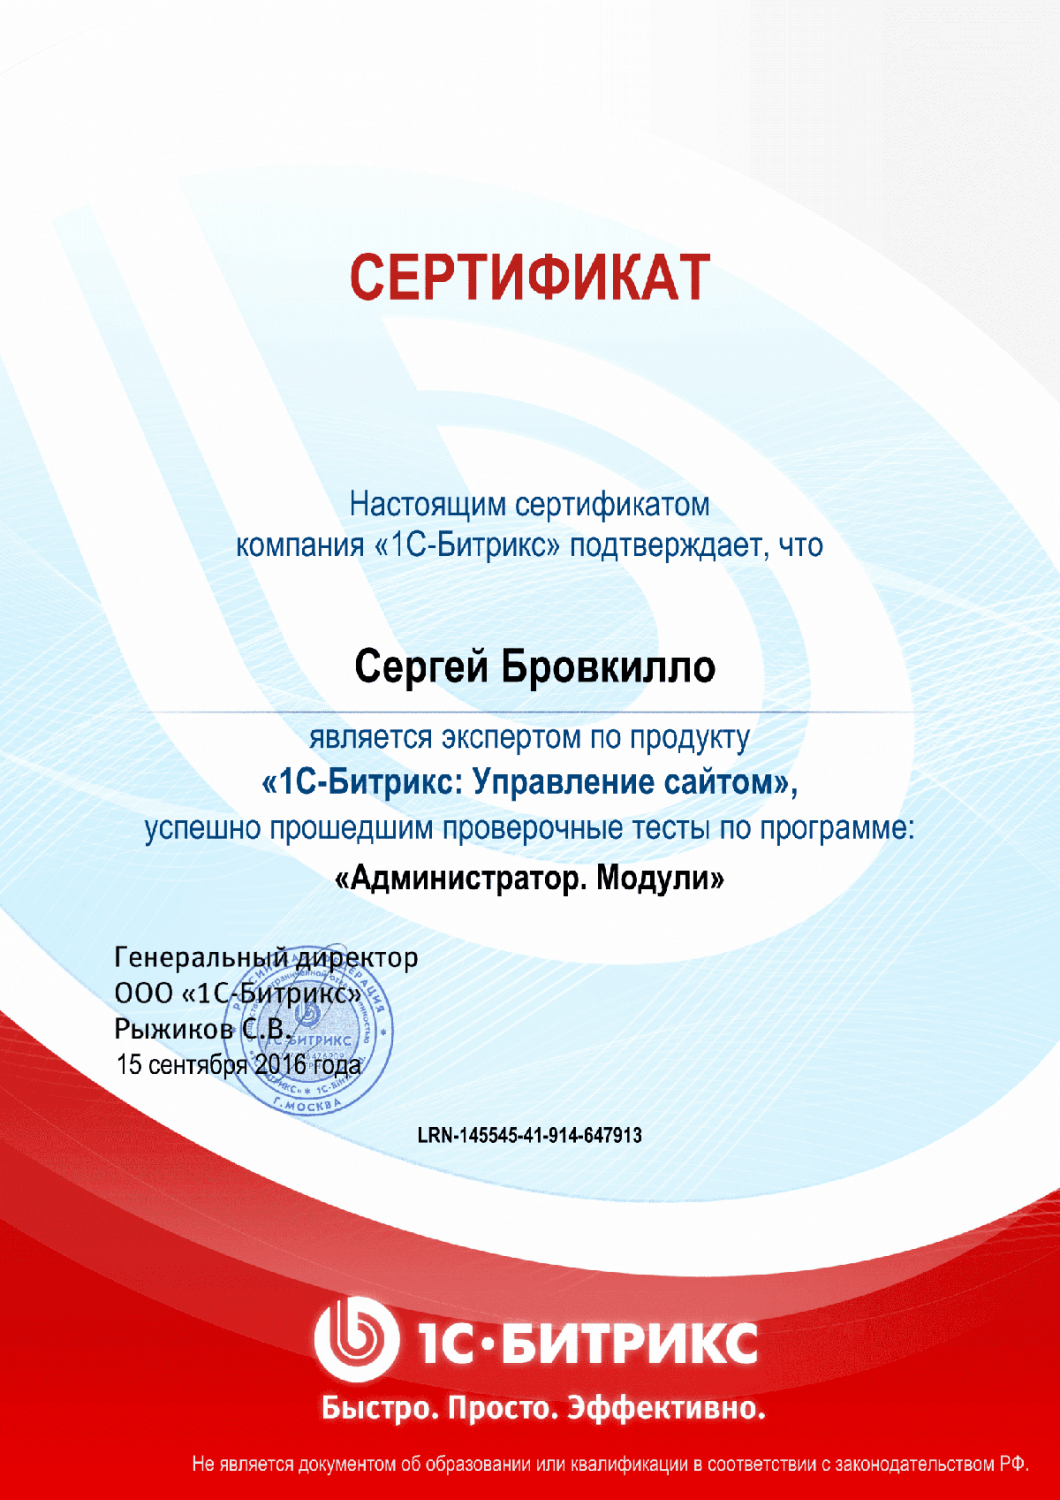 Сертификат эксперта по программе "Администратор. Модули" в Улан-Удэ